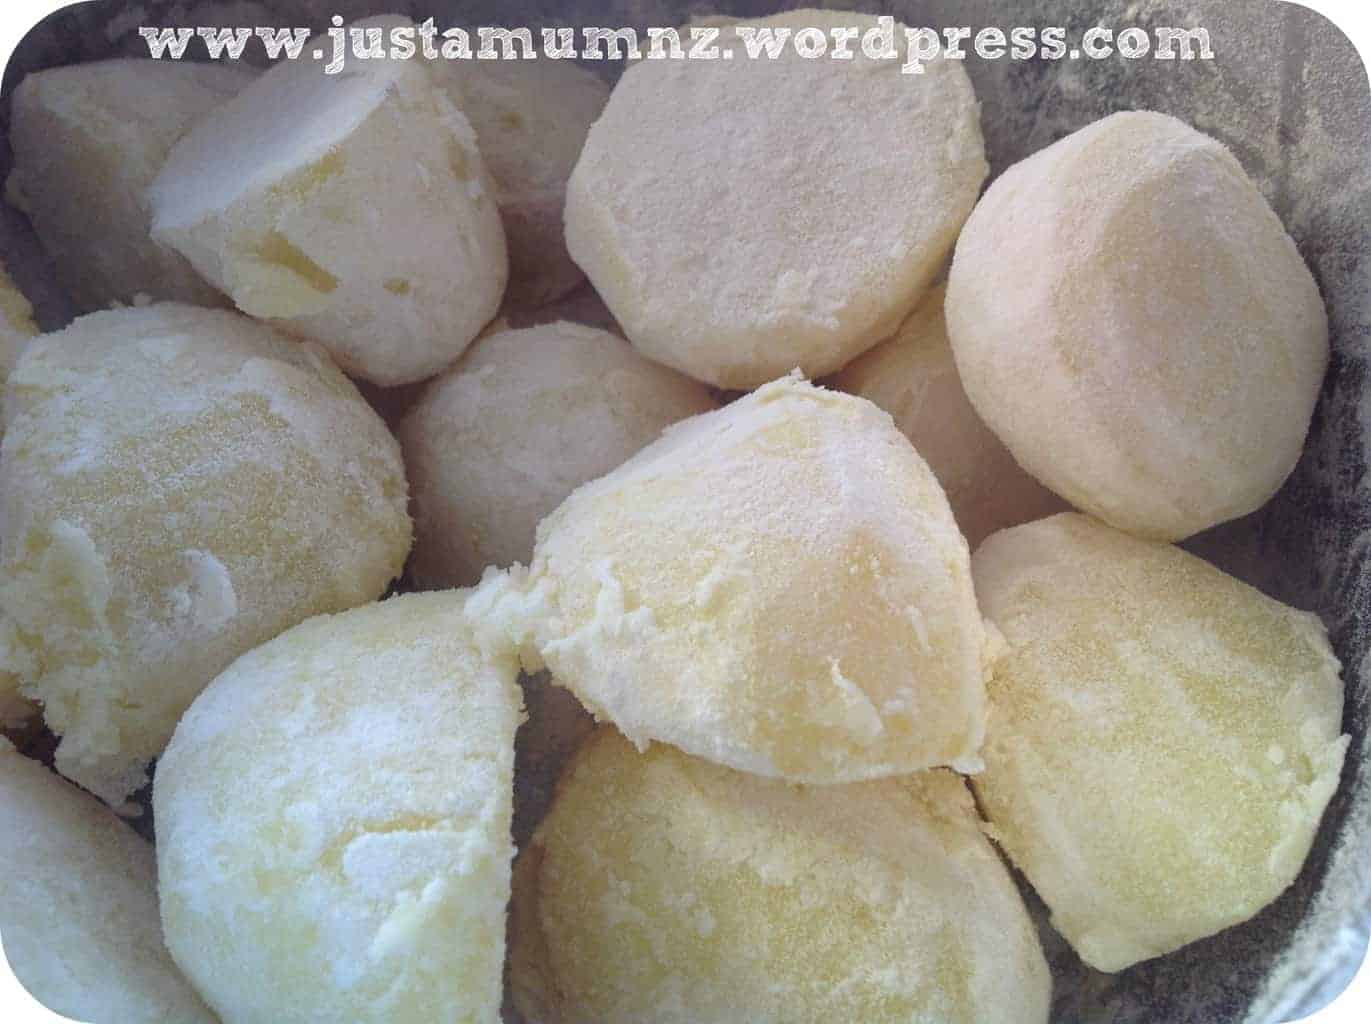 Toss the par baked potatoes into flour 